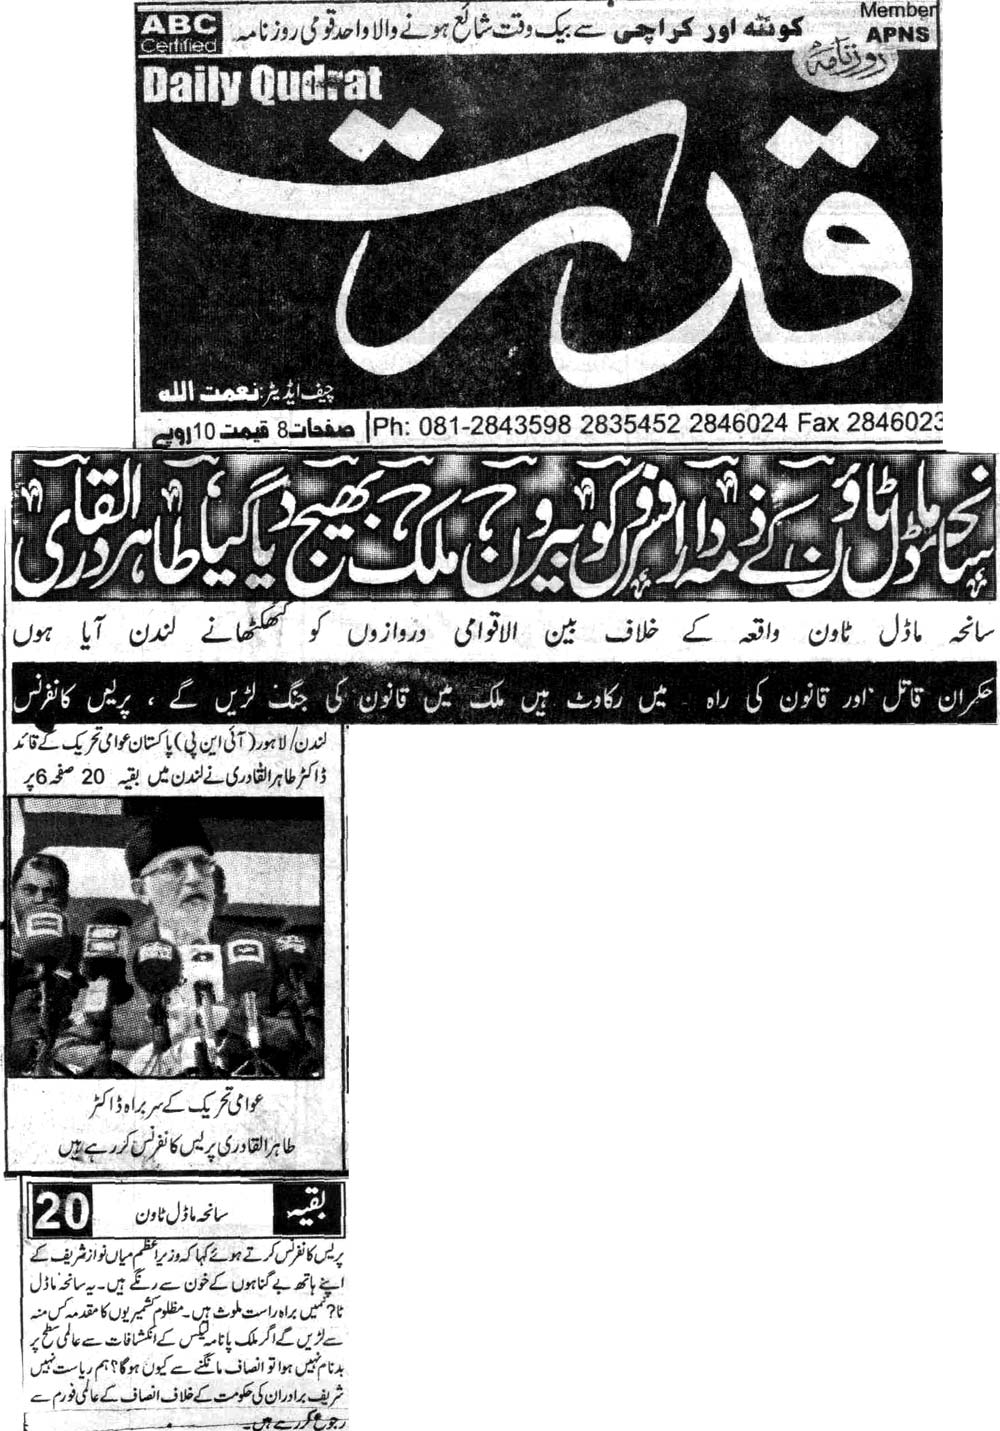 Minhaj-ul-Quran  Print Media Coverage Daily Qudrat